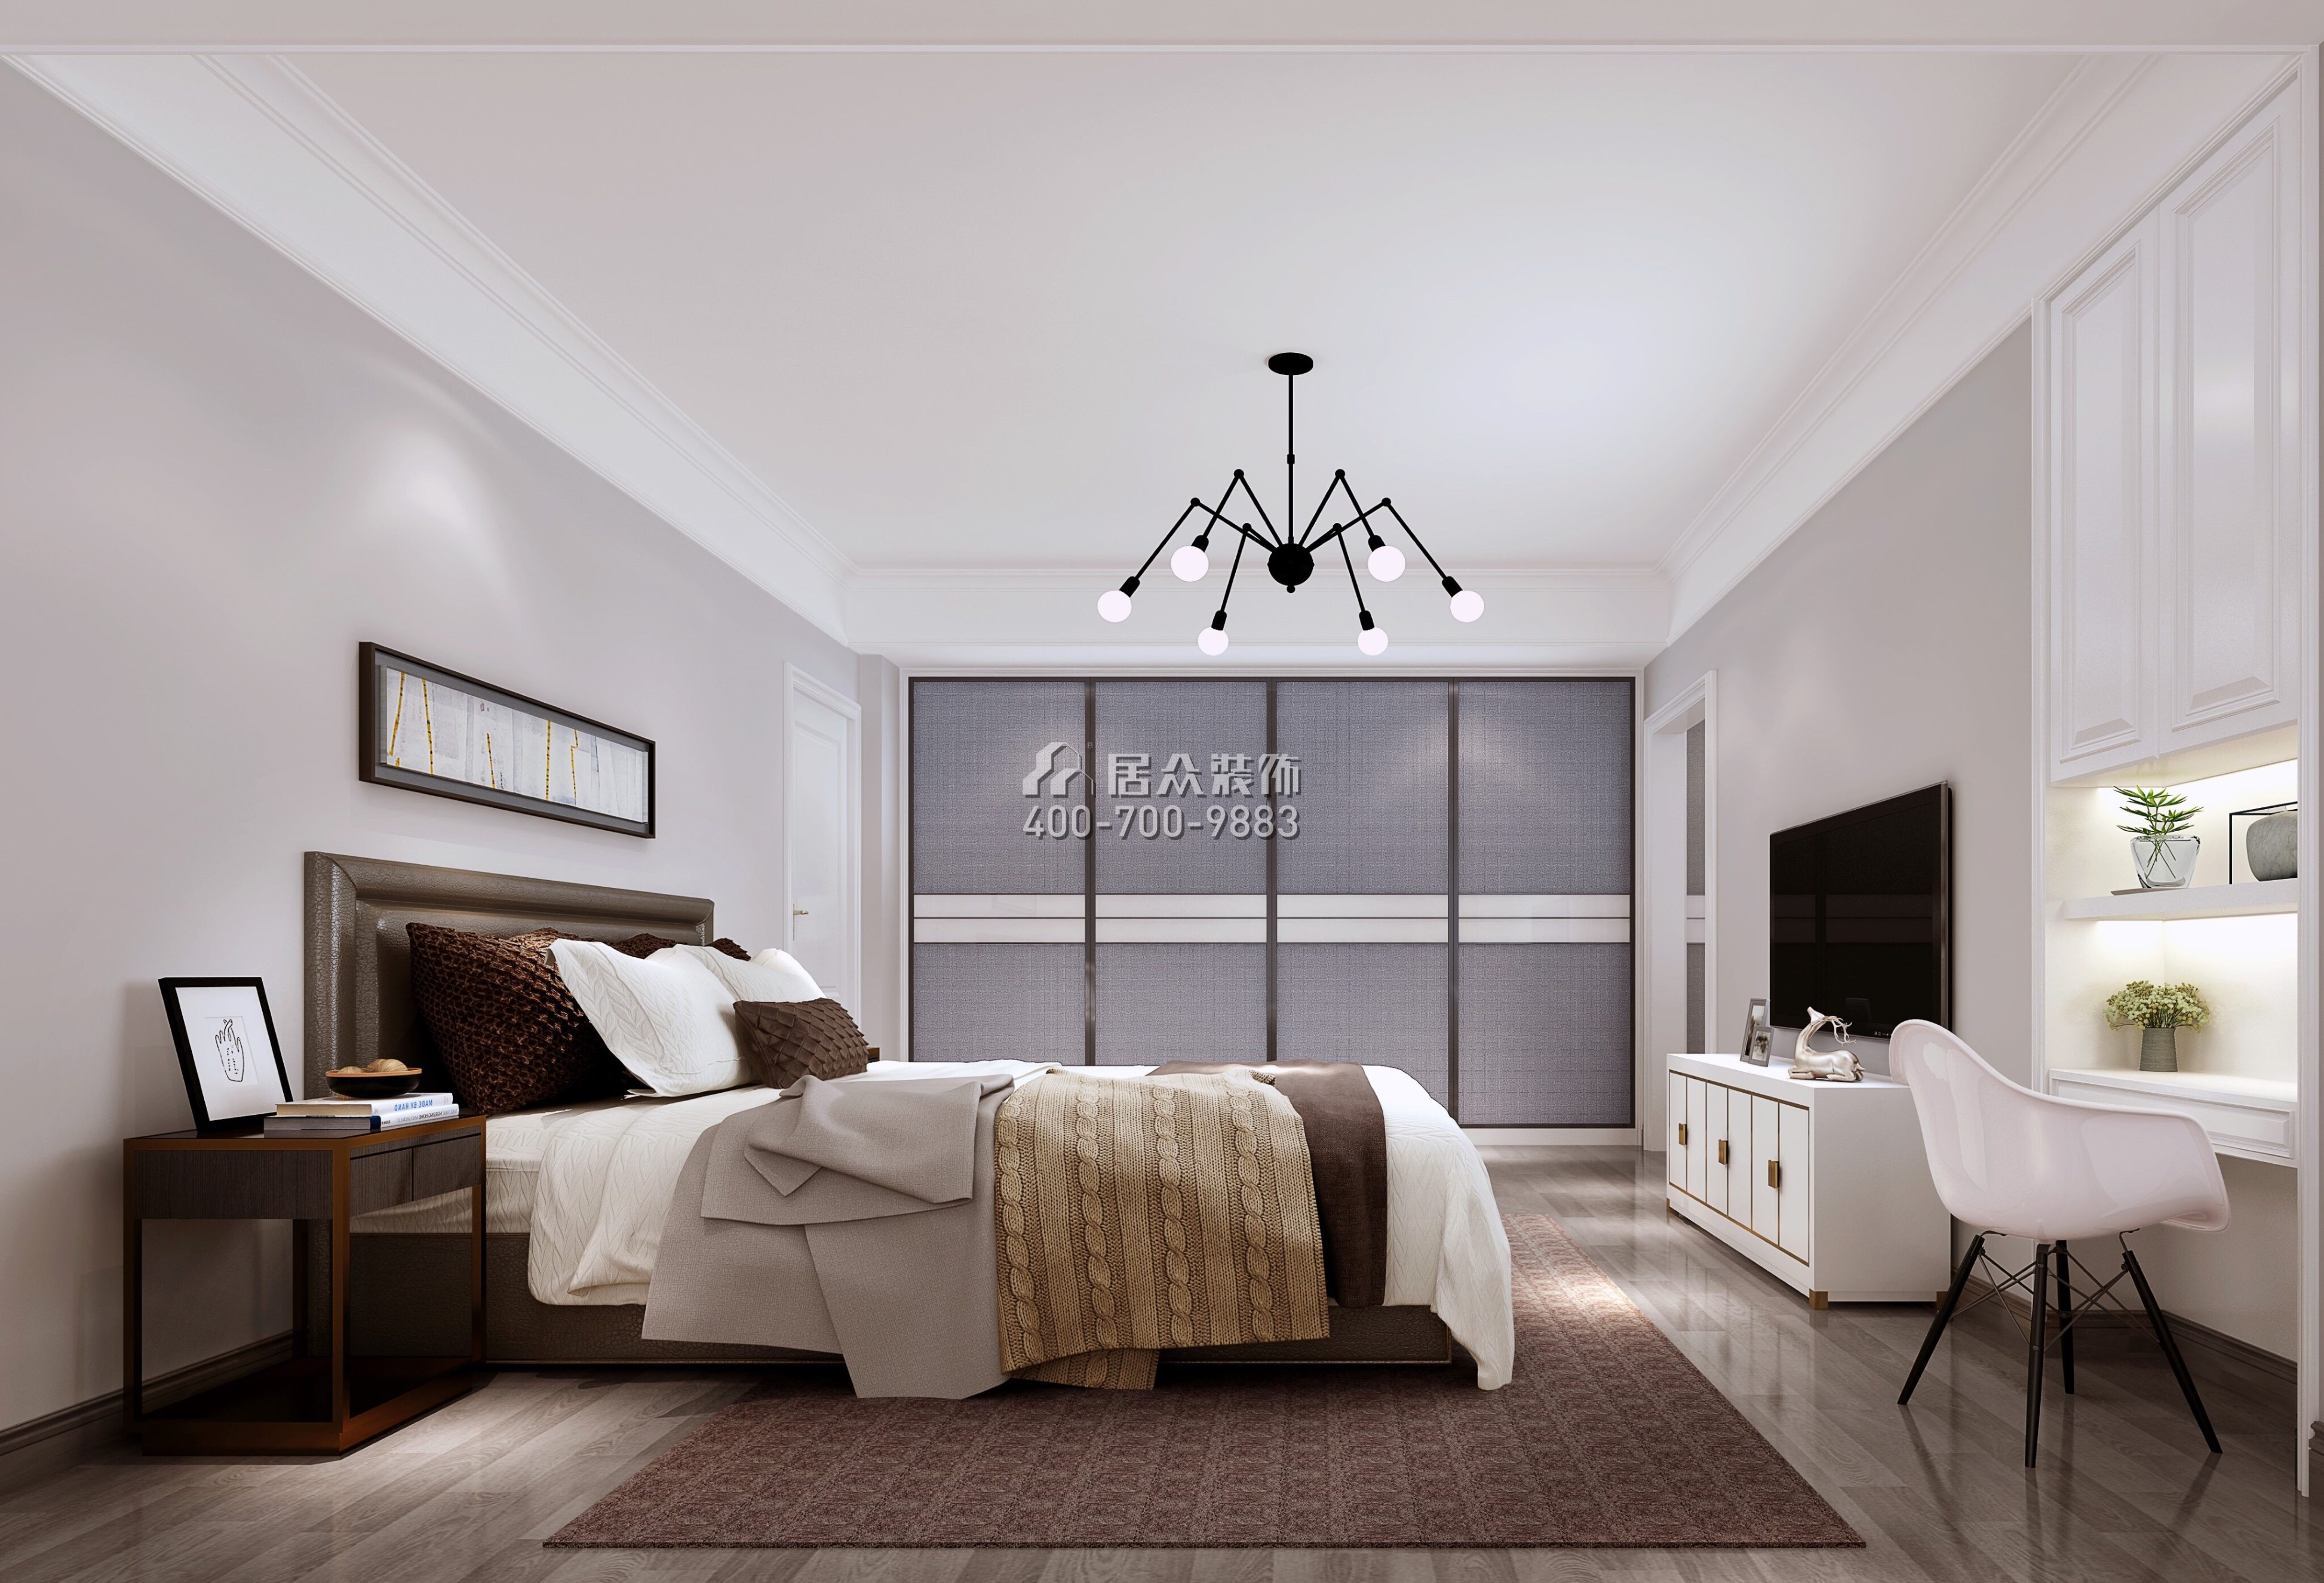 雅居乐白鹭湖贝悦湾146平方米北欧风格复式户型卧室装修效果图